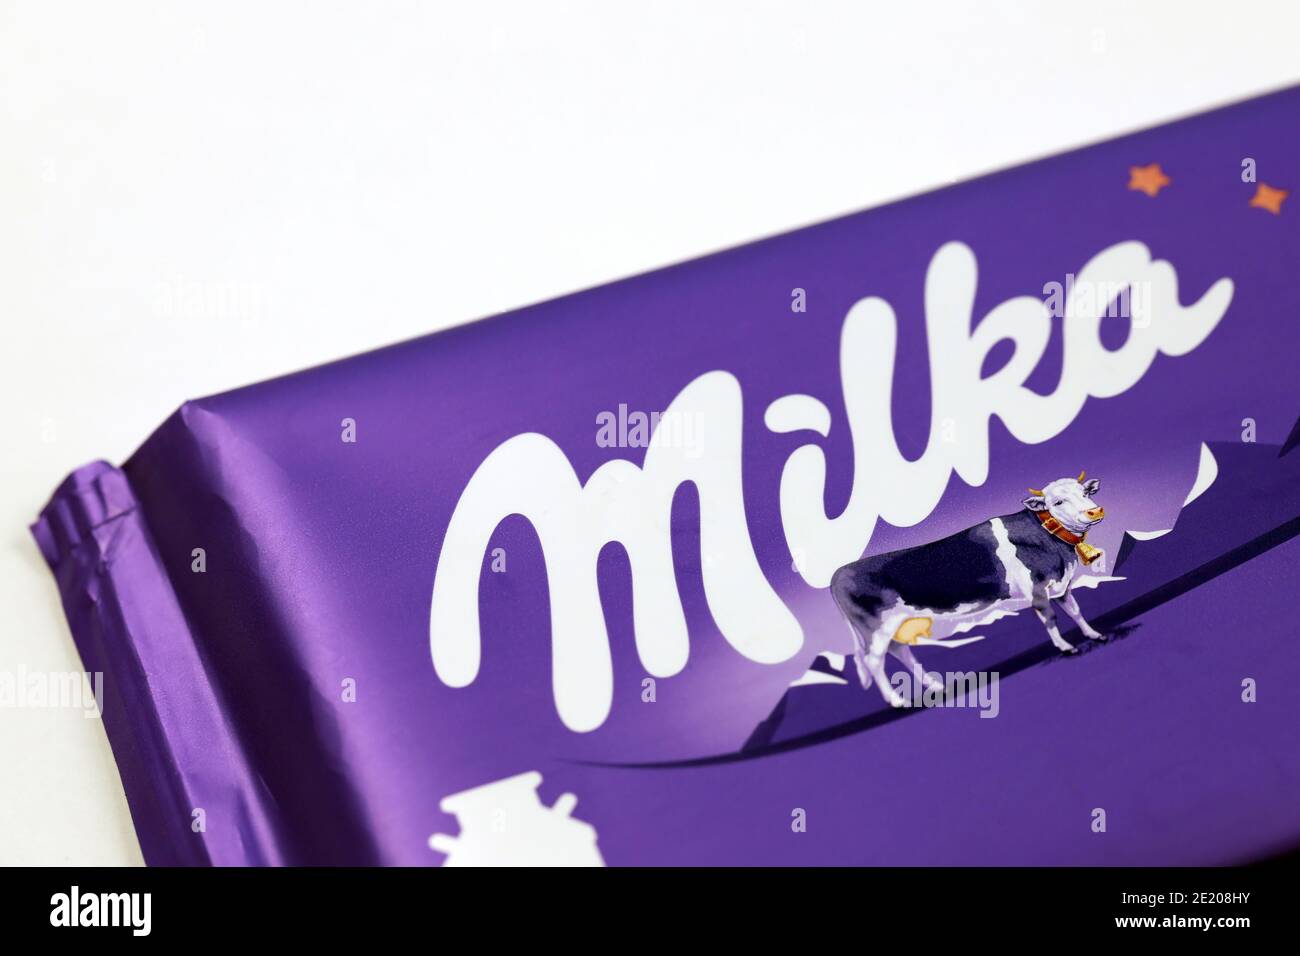 CHARKOW, UKRAINE - 8. DEZEMBER 2020: Logo auf violetter Milka-Schokolade  auf weißem Hintergrund. Milka ist eine Schweizer Marke von Schokolade  Konfektion hergestellt i Stockfotografie - Alamy